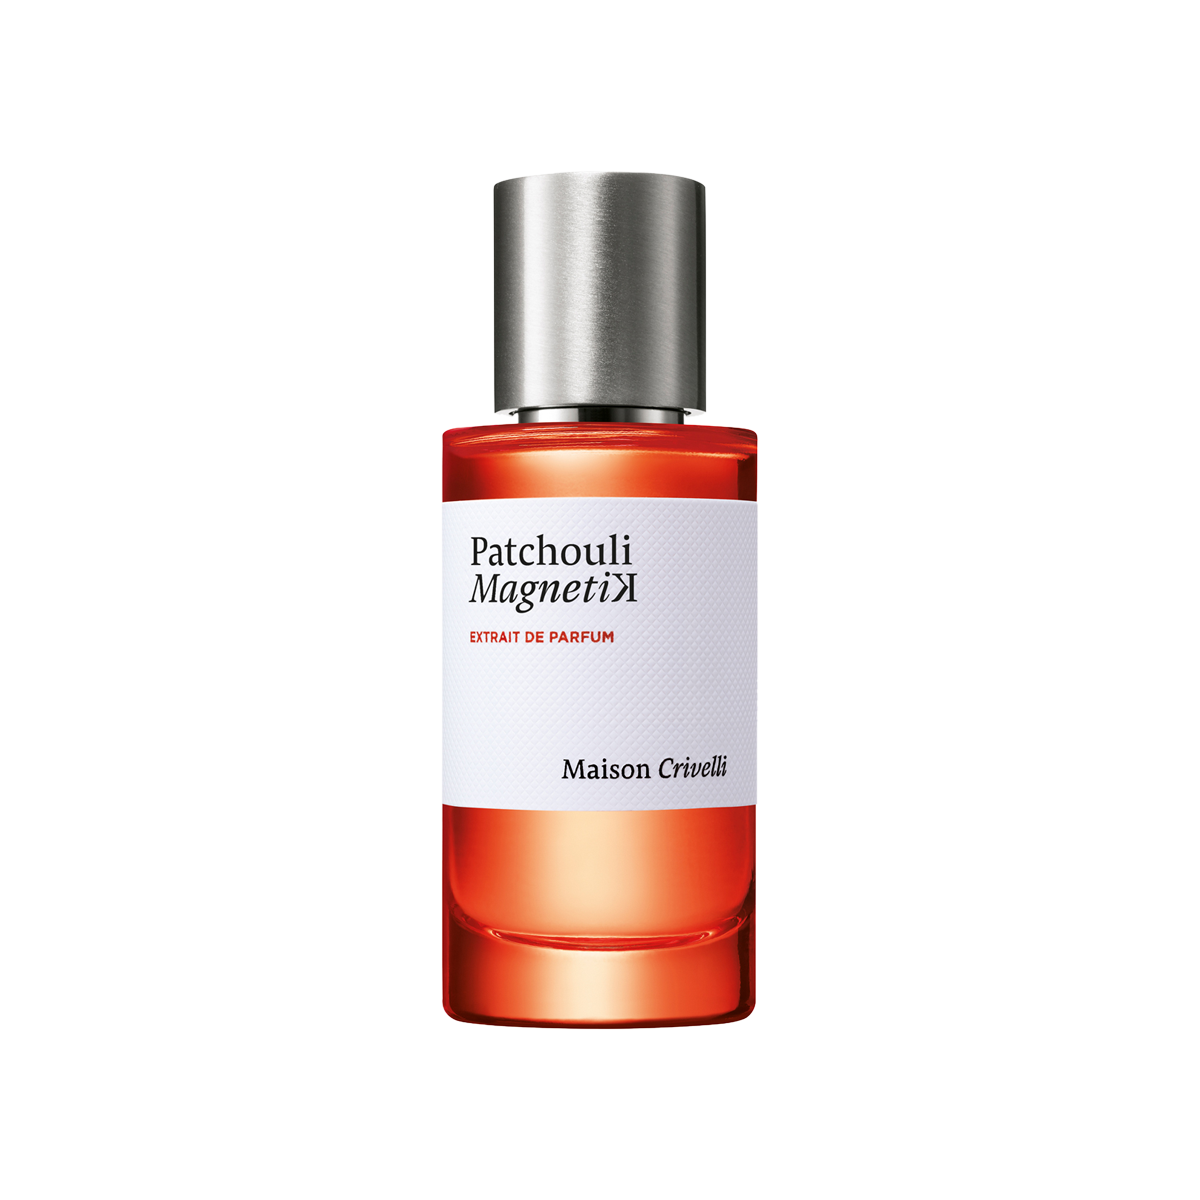 Maison Crivelli - Patchouli Magnetik Extrait de Parfum